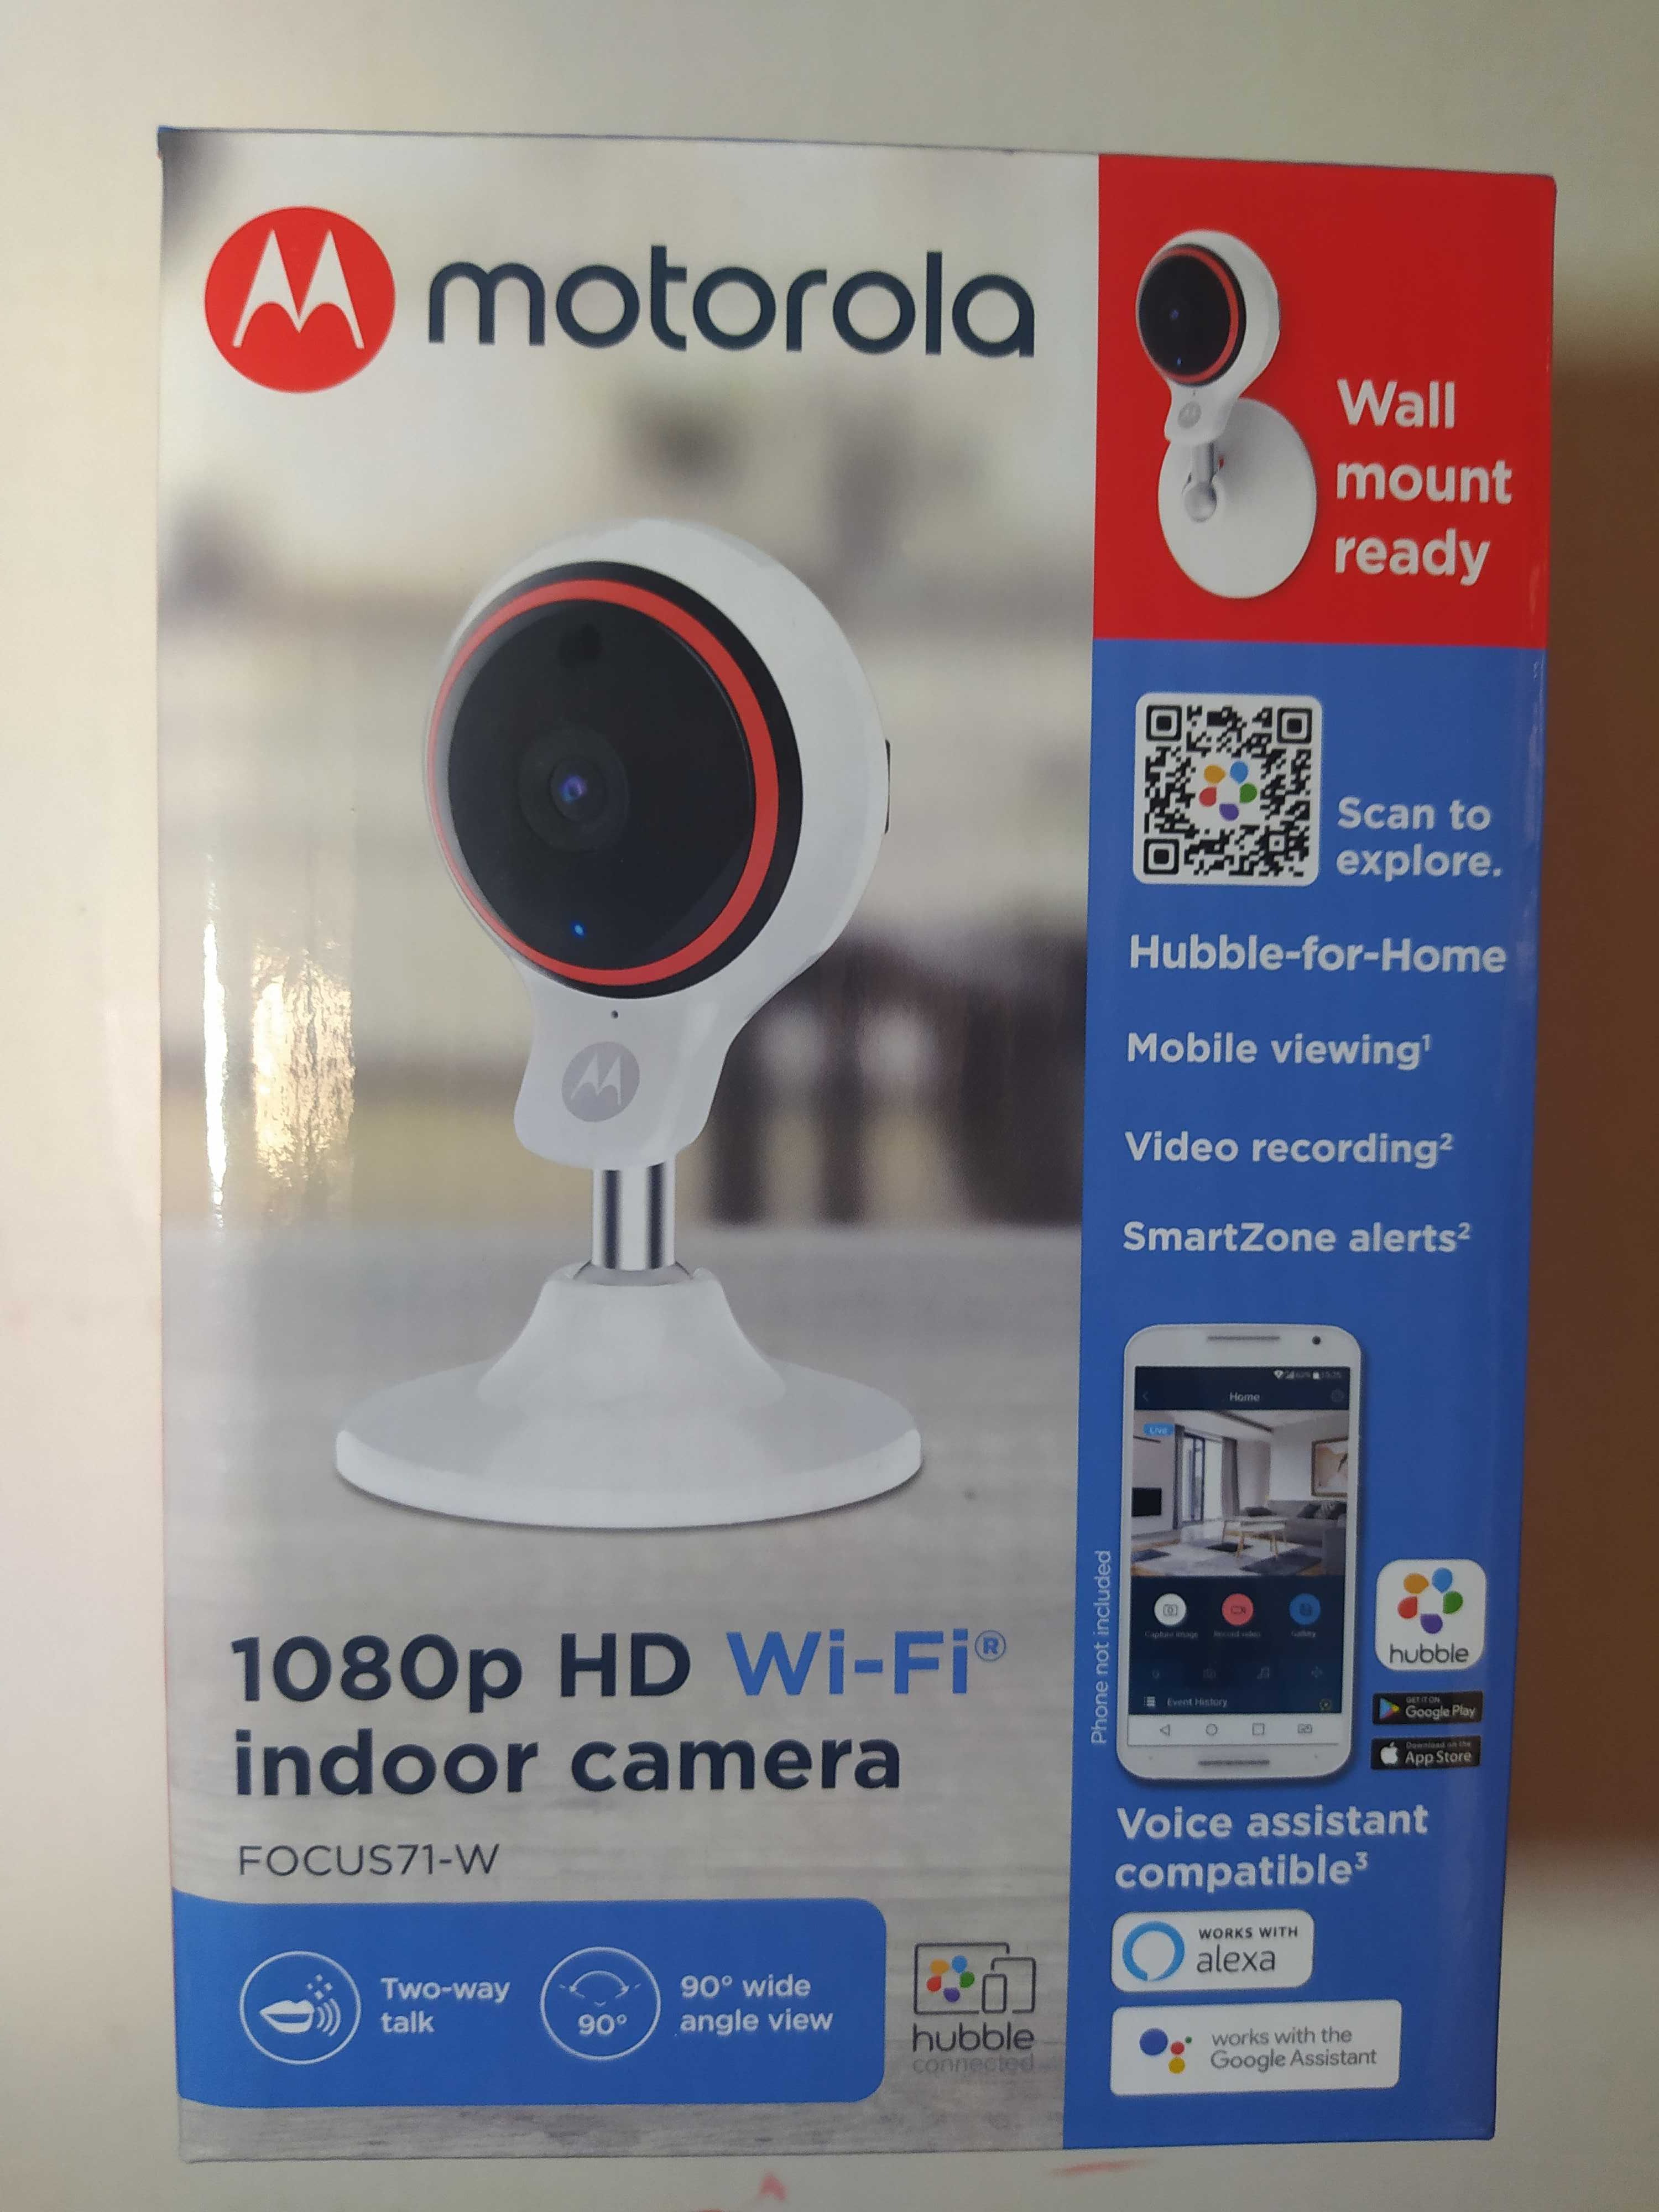 Екшн Камера Rollei Actioncam 40S Pro, Motorola Focus 71-w